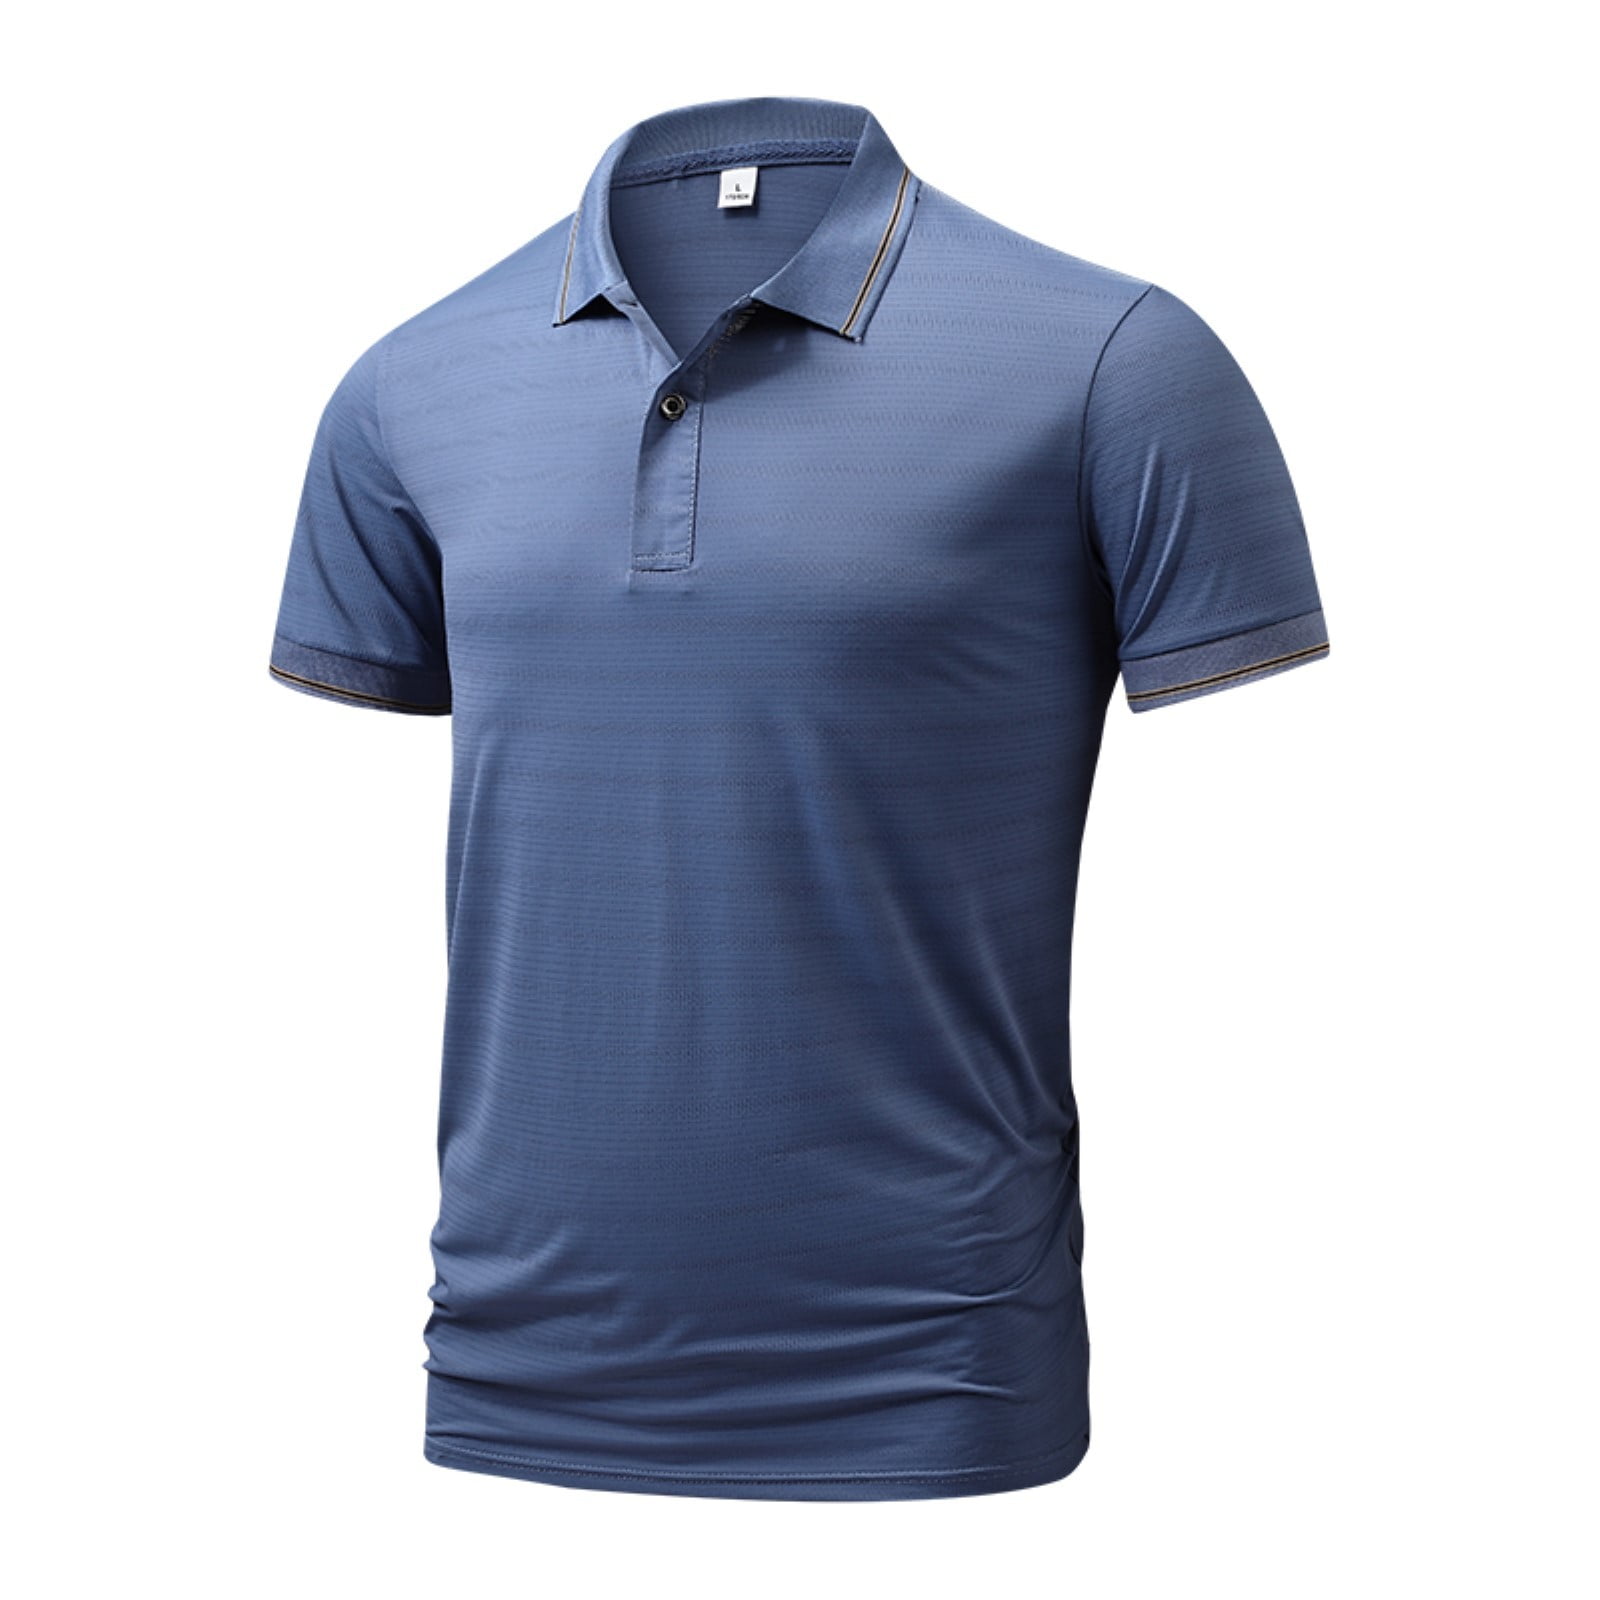 Rrunsv Men'S Polo Shirts Men's Slim Fit Short Sleeve Solid Soft Cotton ...